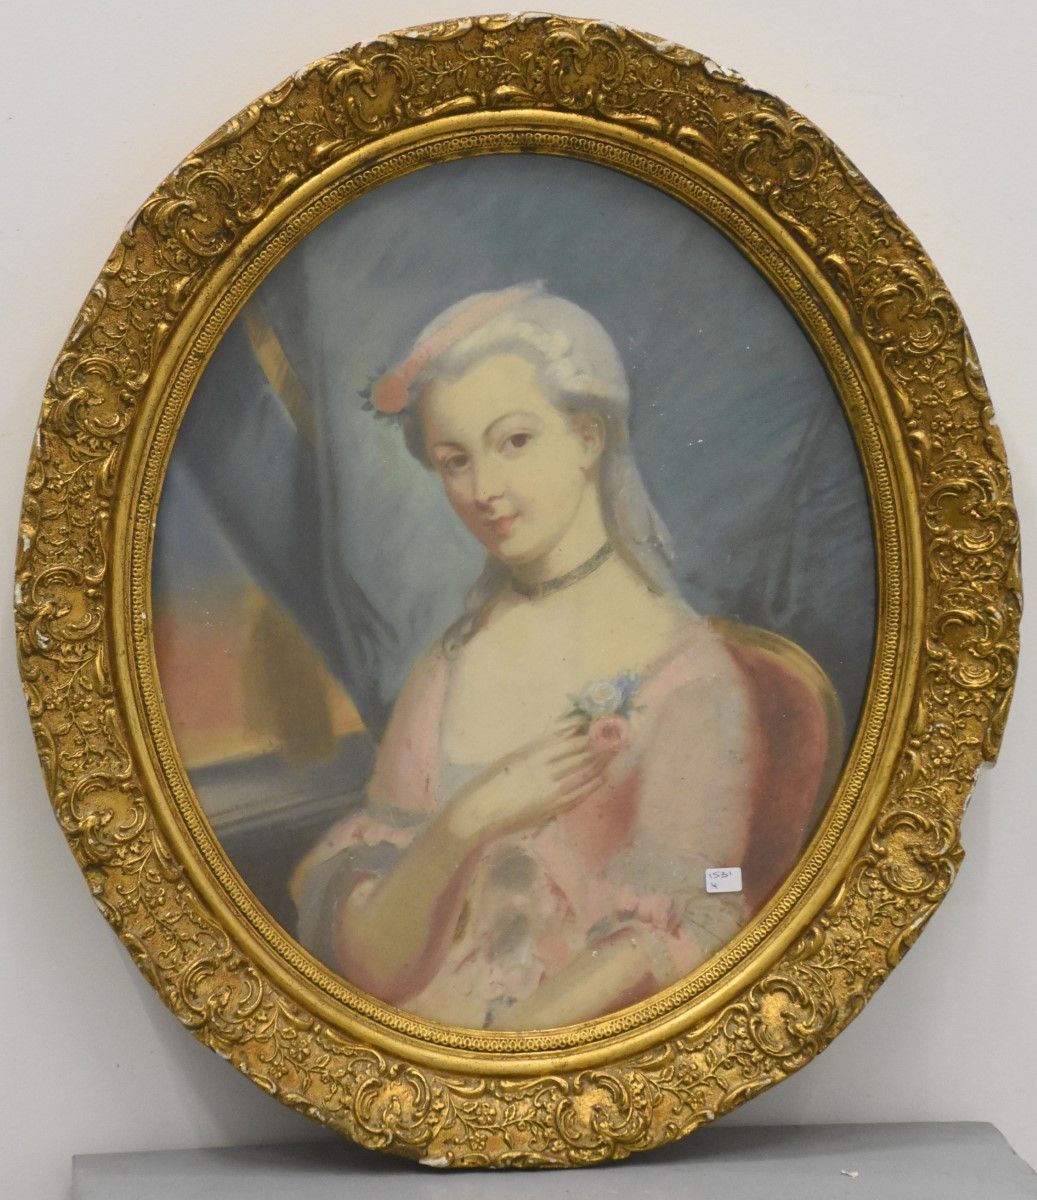 Null 女士肖像》，粉彩画，19 世纪，最大尺寸约 46x38,5cm，玻璃后装裱，镜框有凹凸不平